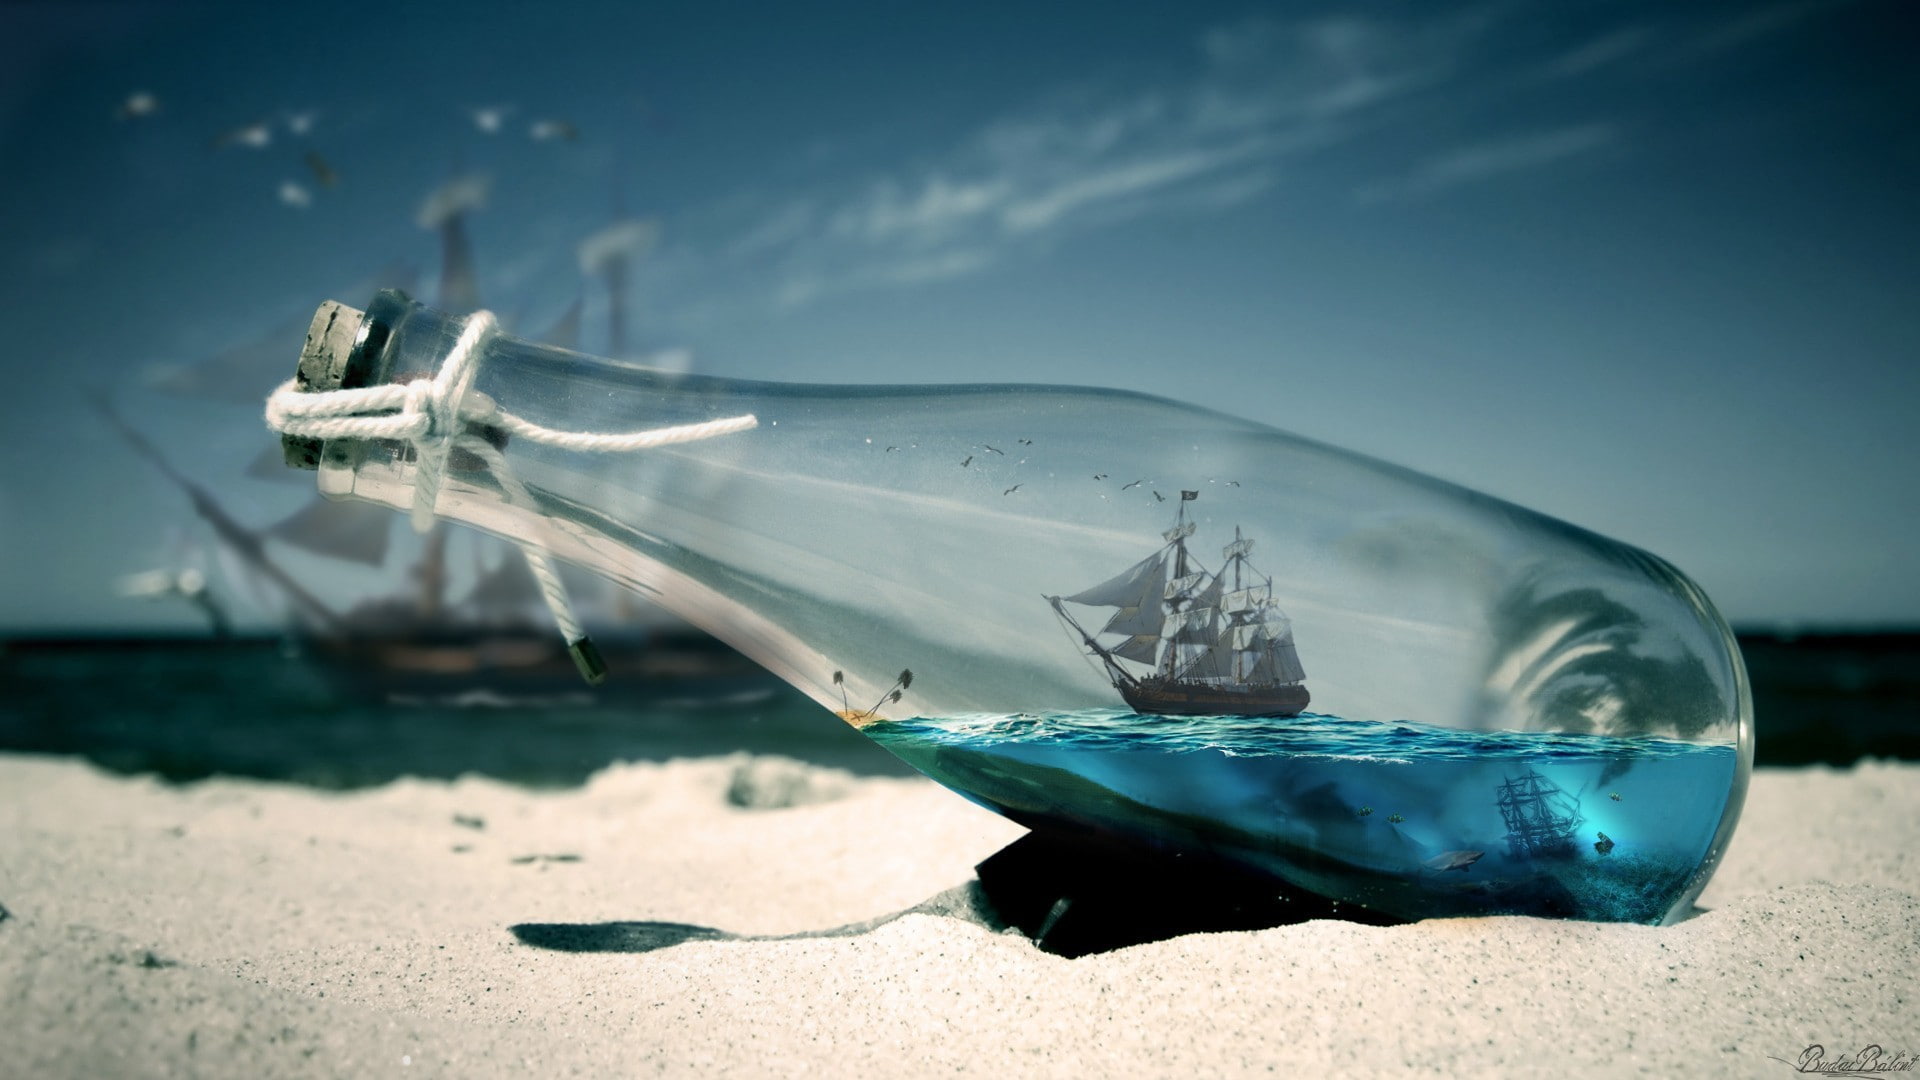 beach, sunset, bottles, thread, sailing ship, depth of field